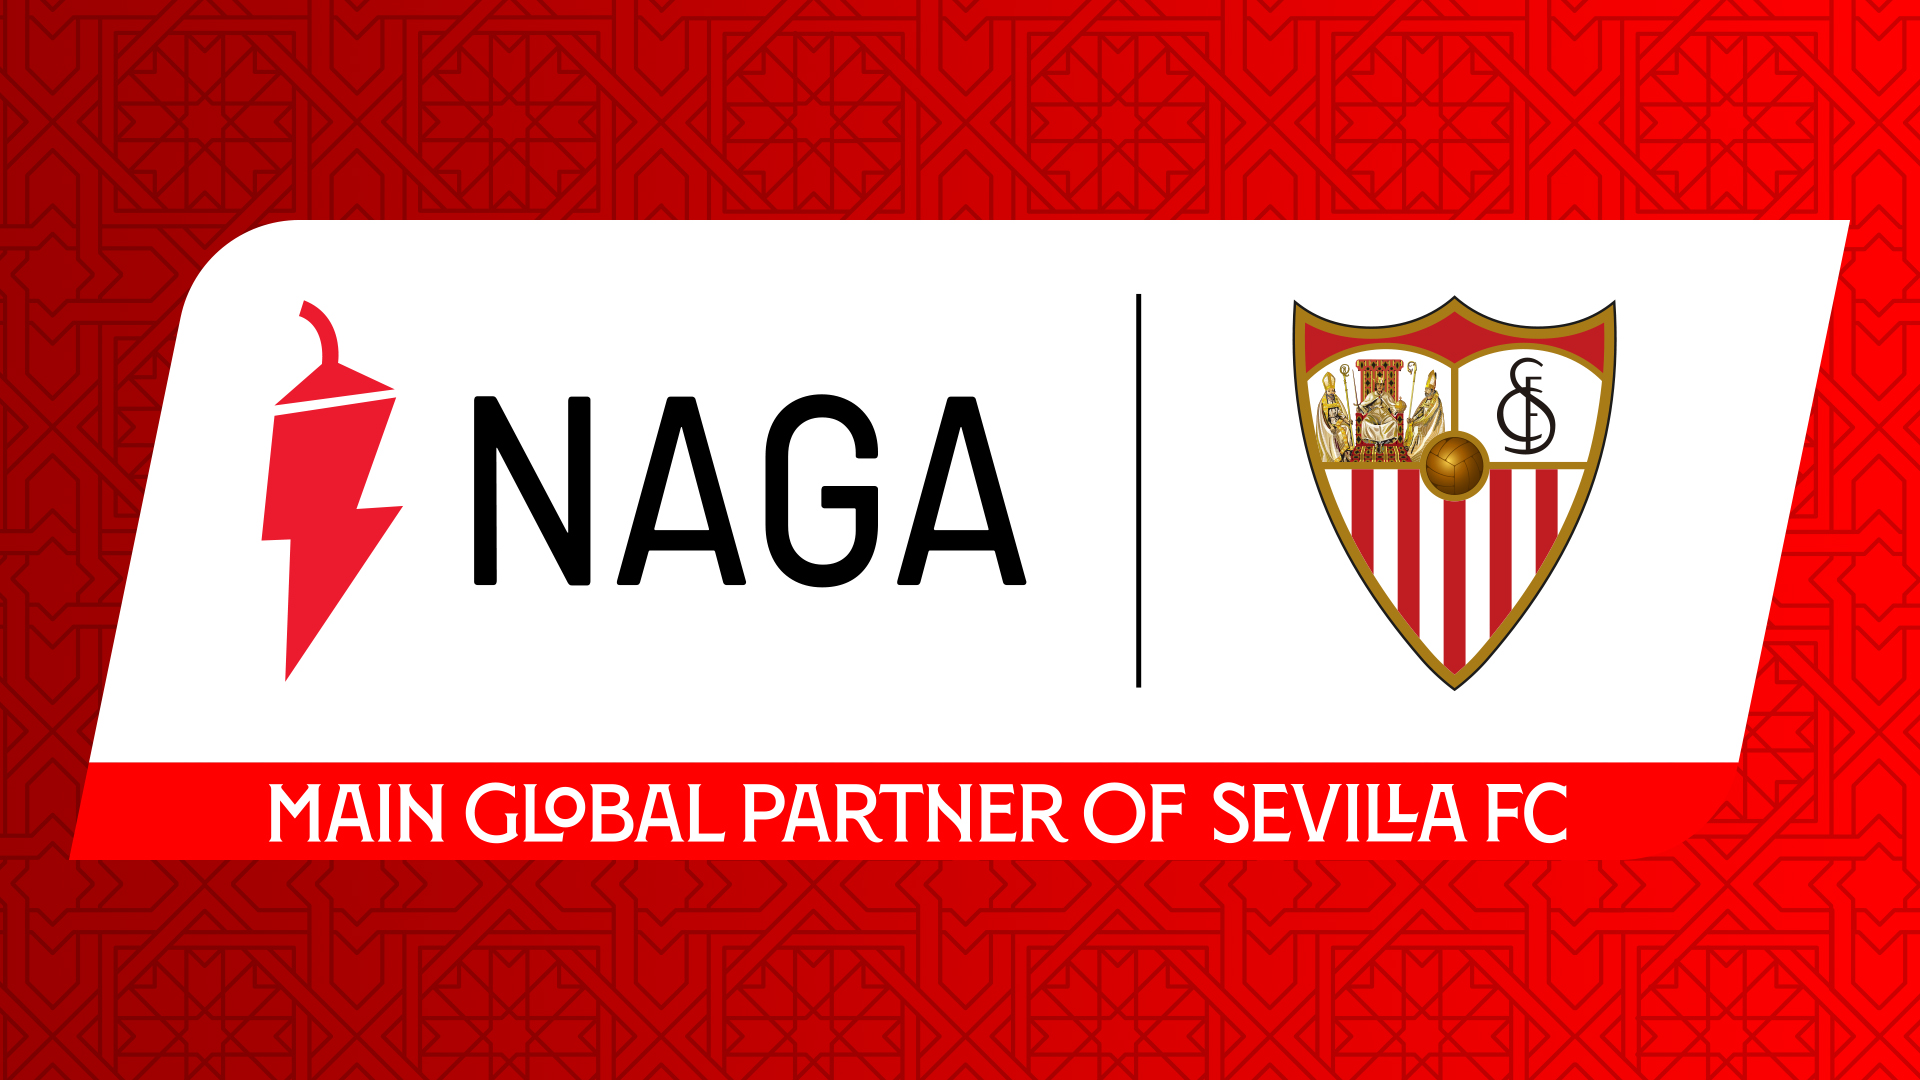 NAGA - Sevilla FC's new sponsor